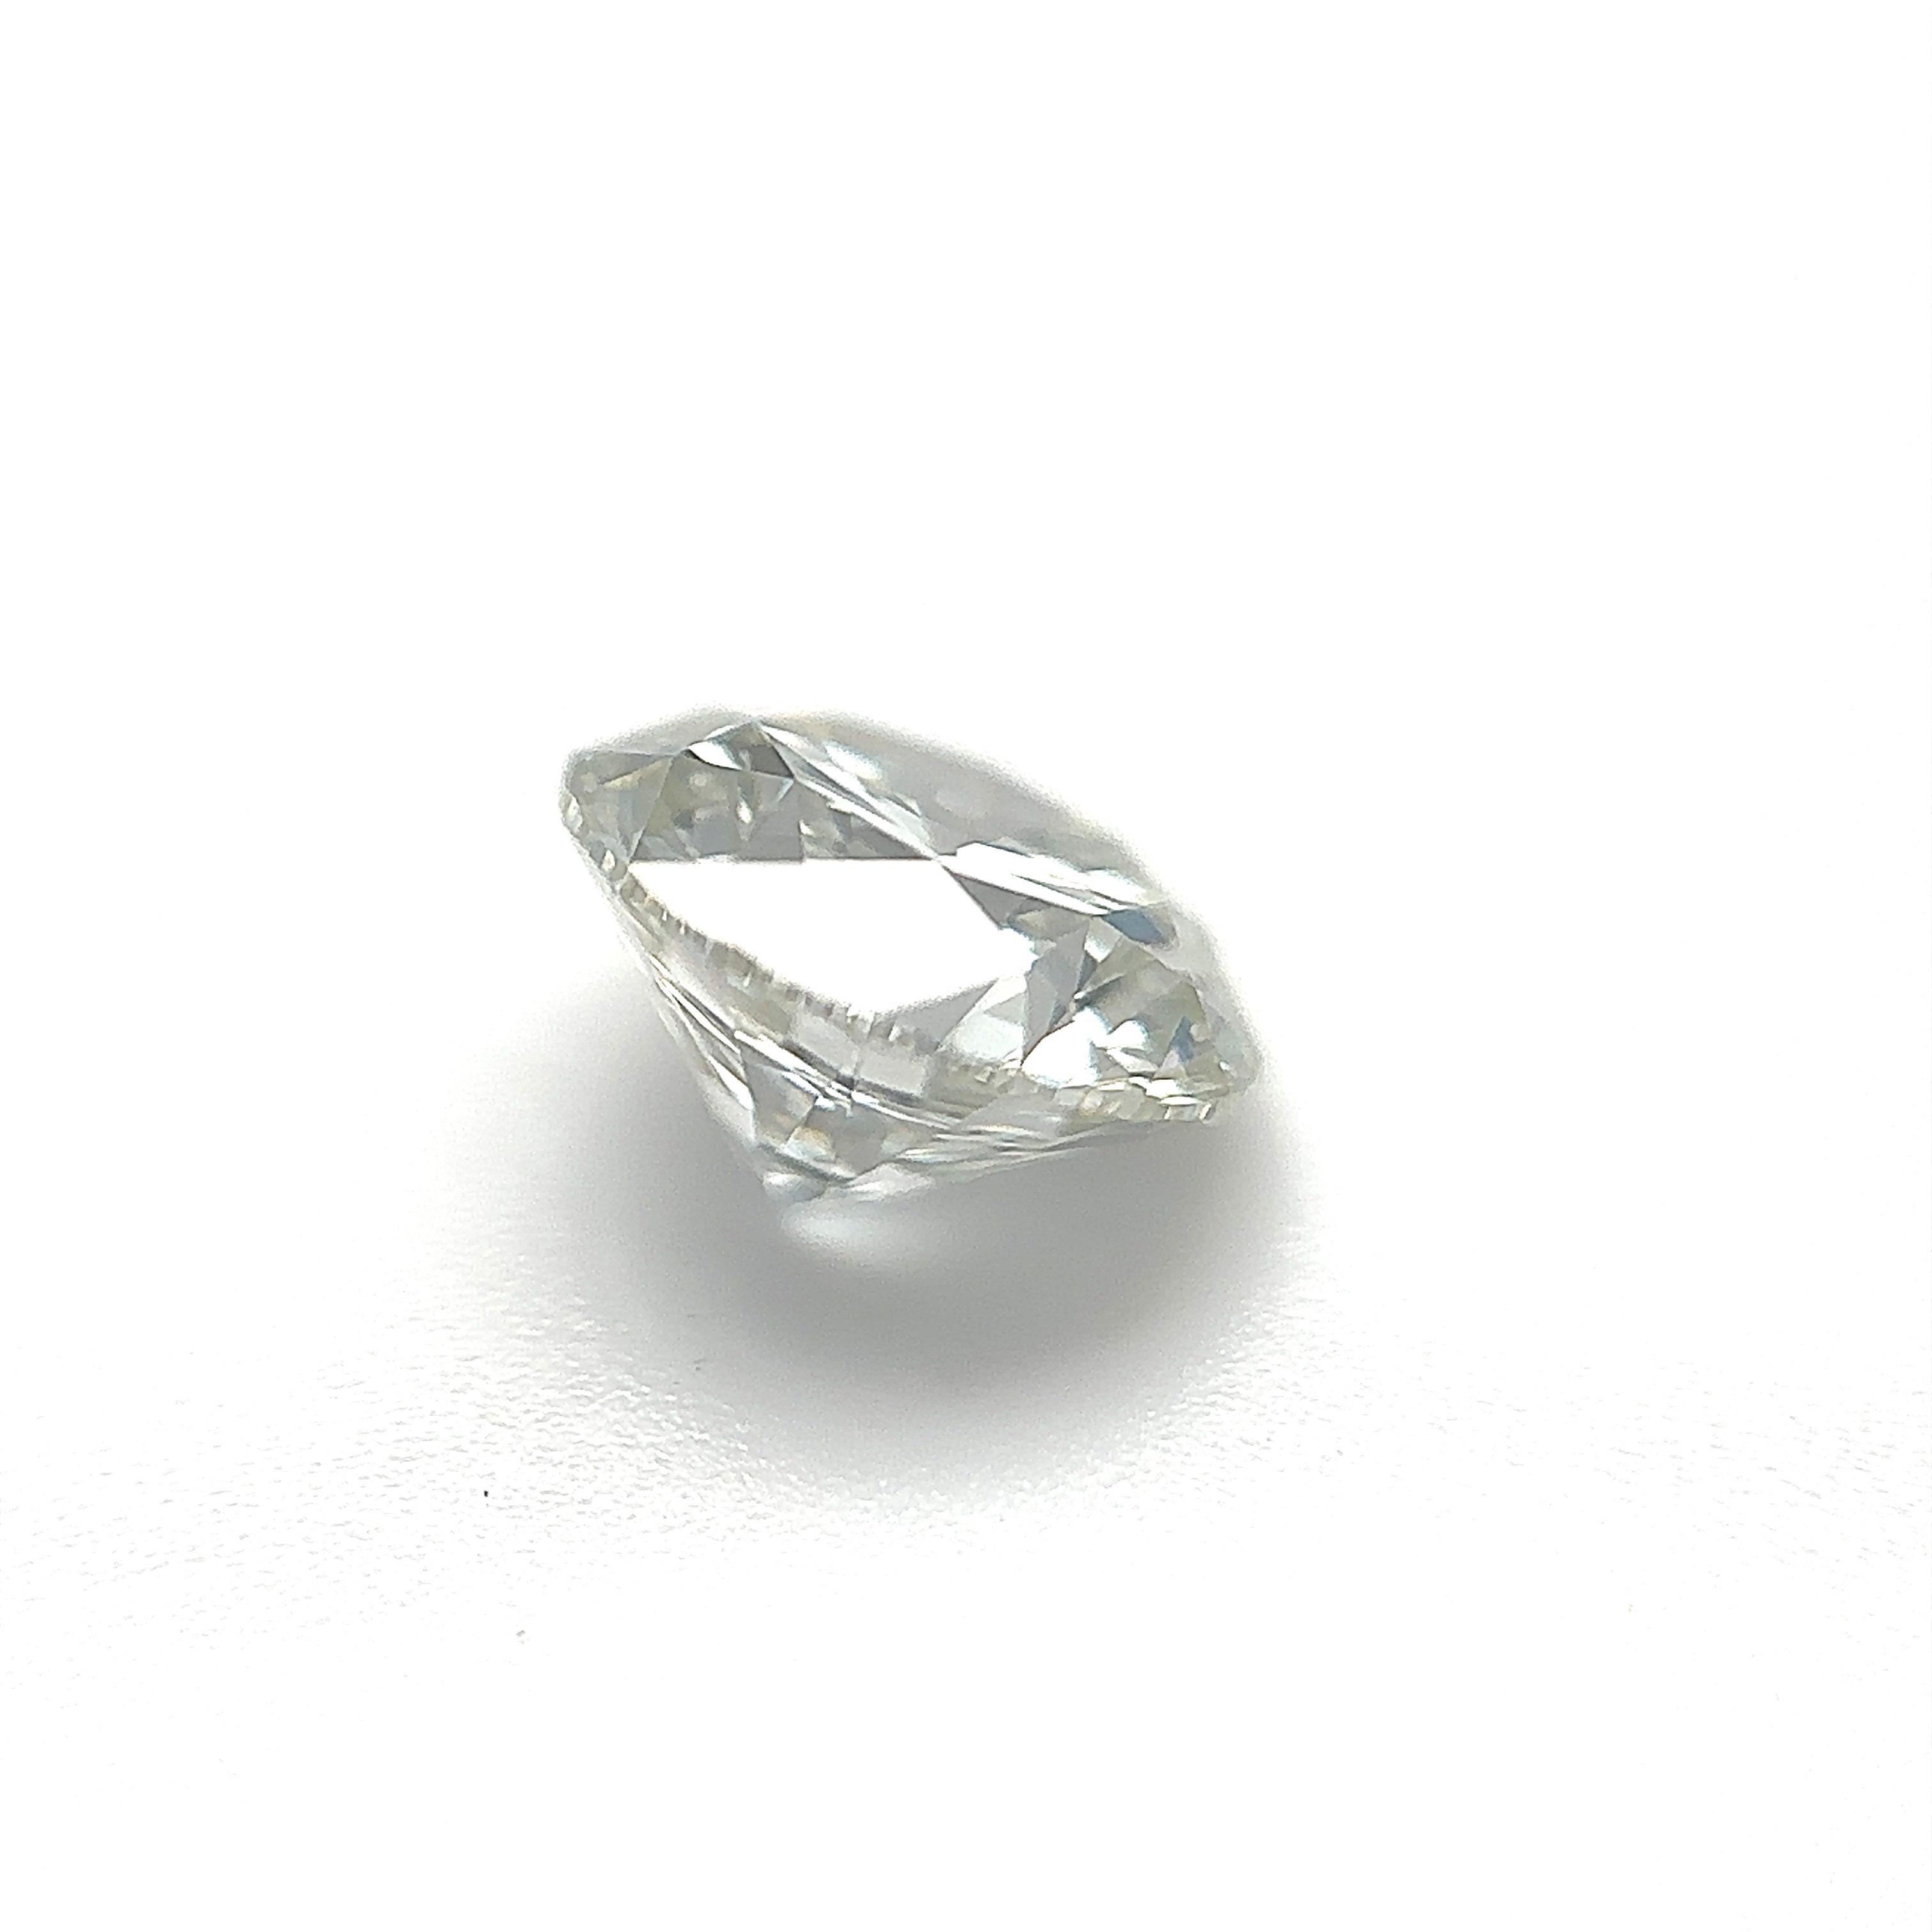 GIA Certified 1.30 Carat Round Brilliant Natural Diamond Loose Stone (Customization Option)

Couleur : H
Clarté : VS2

Idéal pour les bagues de fiançailles, les alliances, les colliers et les boucles d'oreilles en diamant. Contactez-nous pour